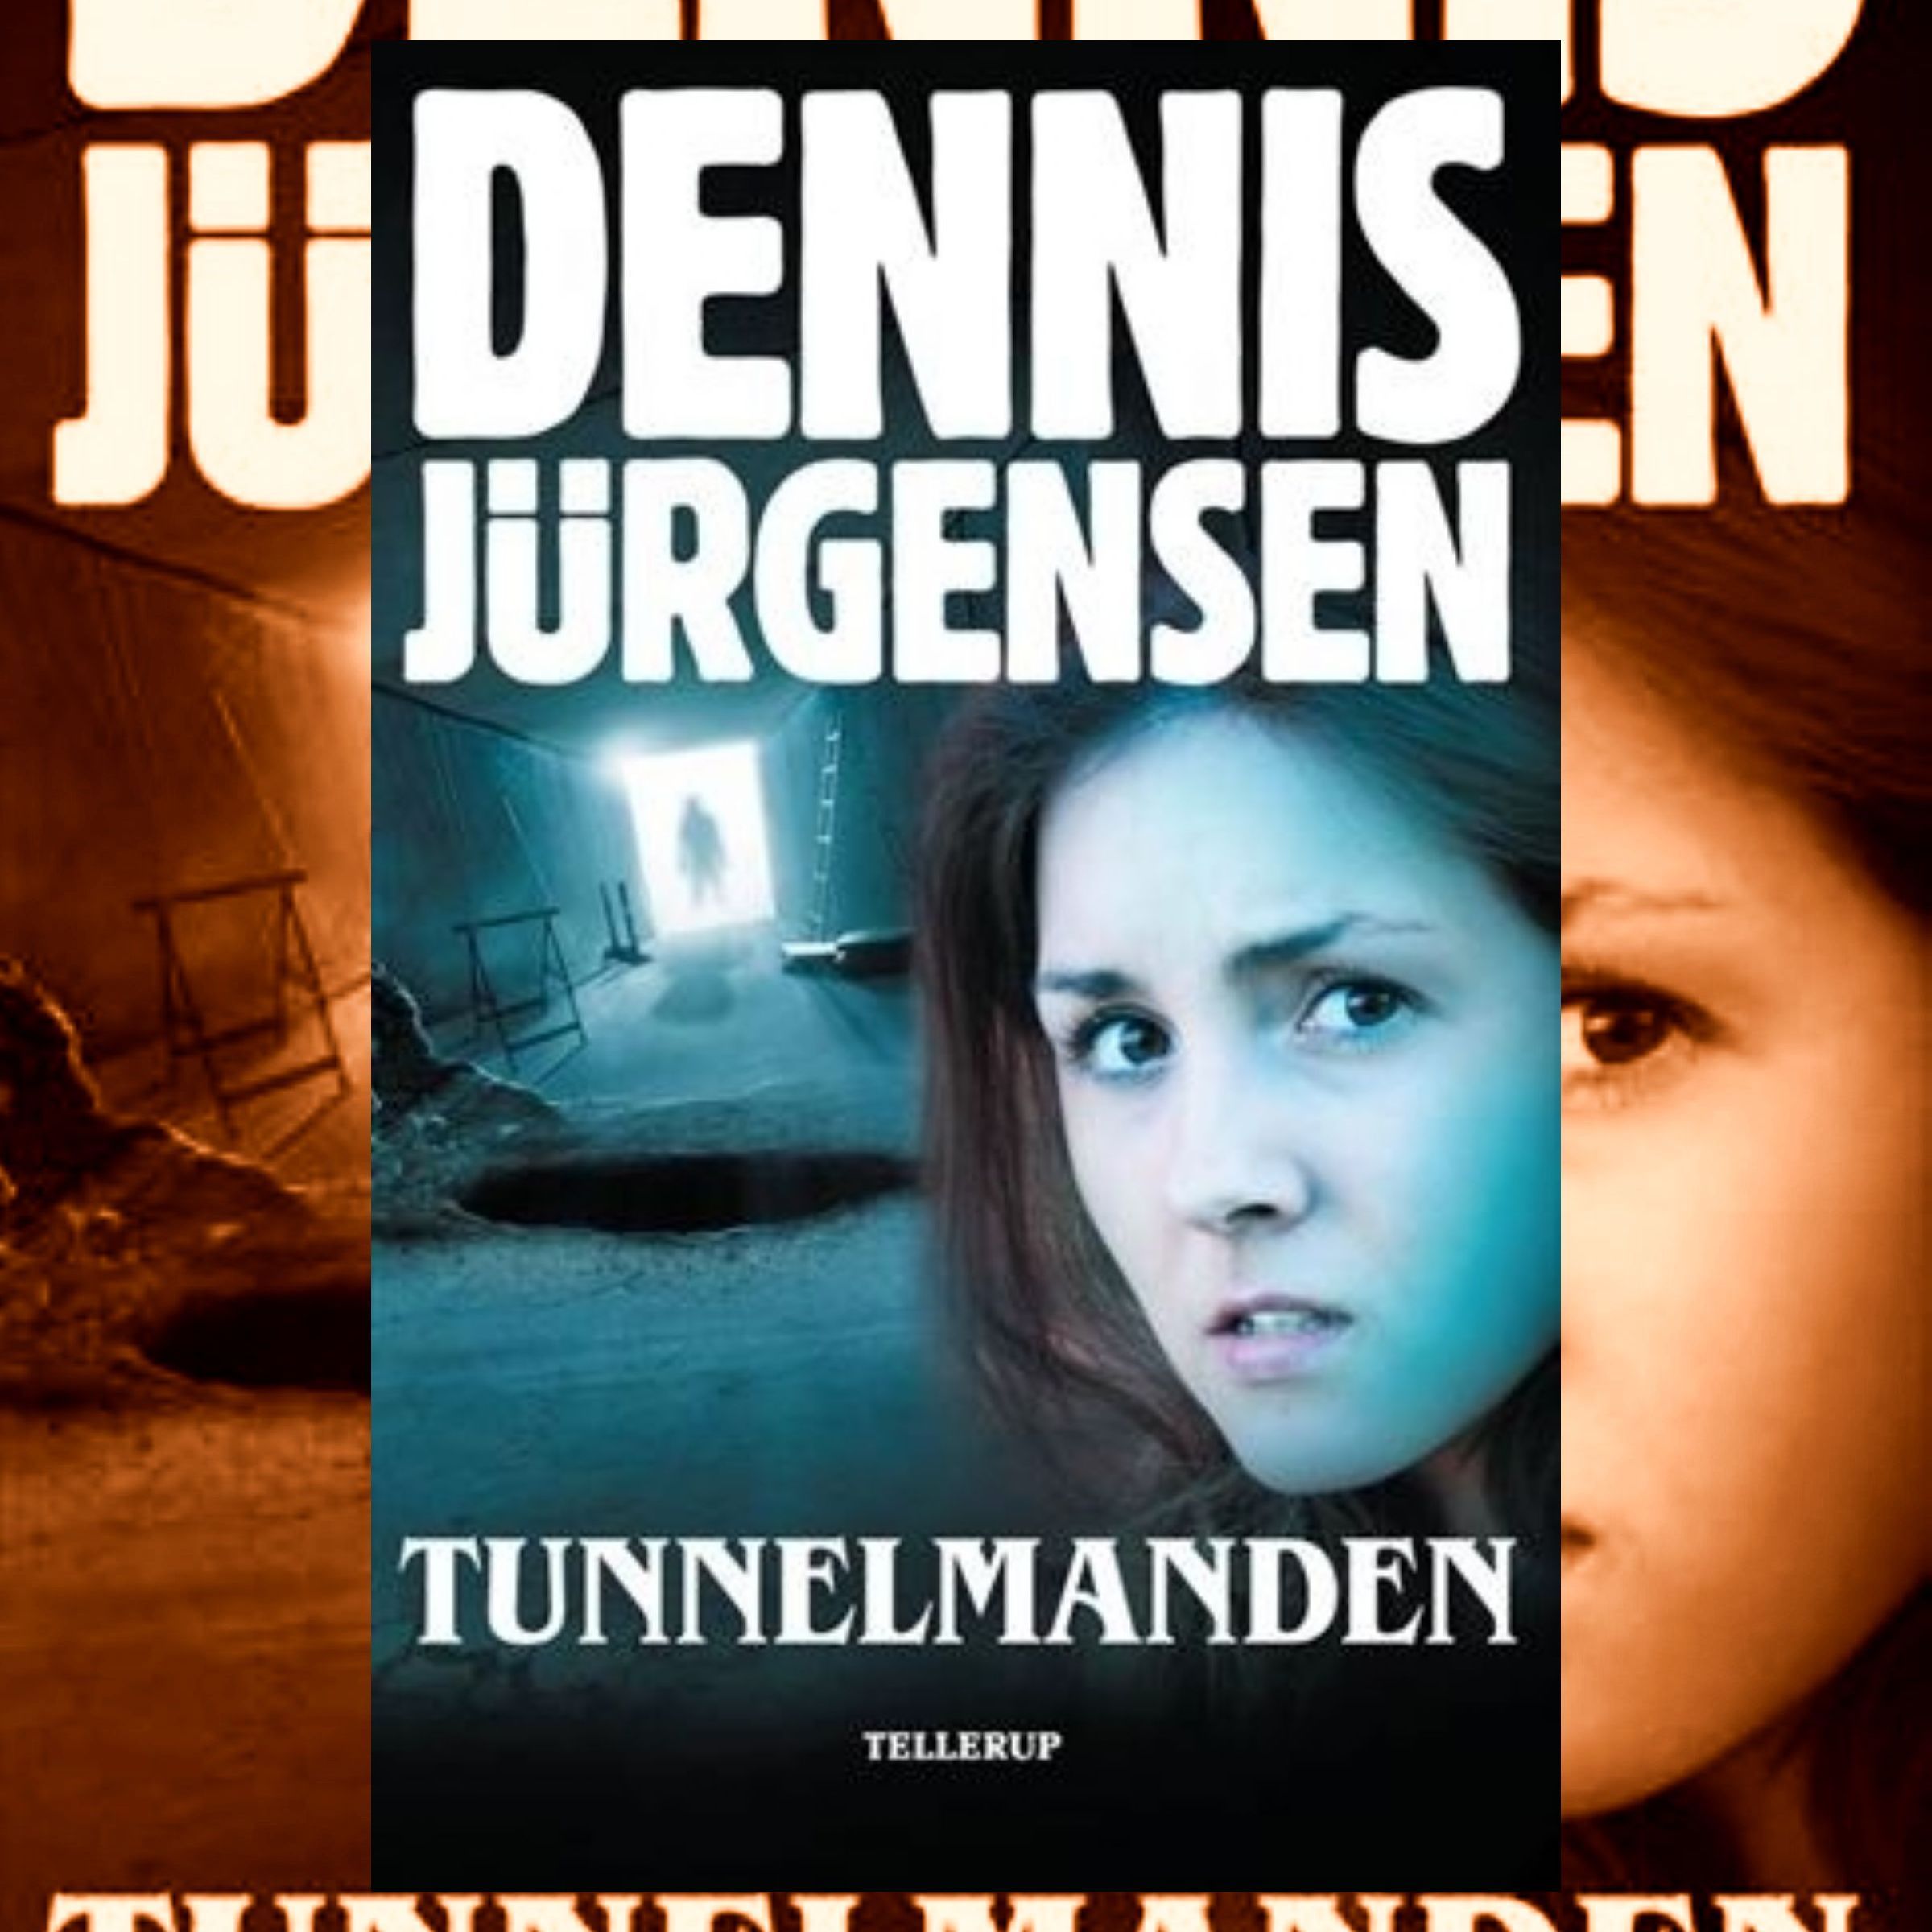 Tunnelmanden, lydbog af Dennis Jürgensen